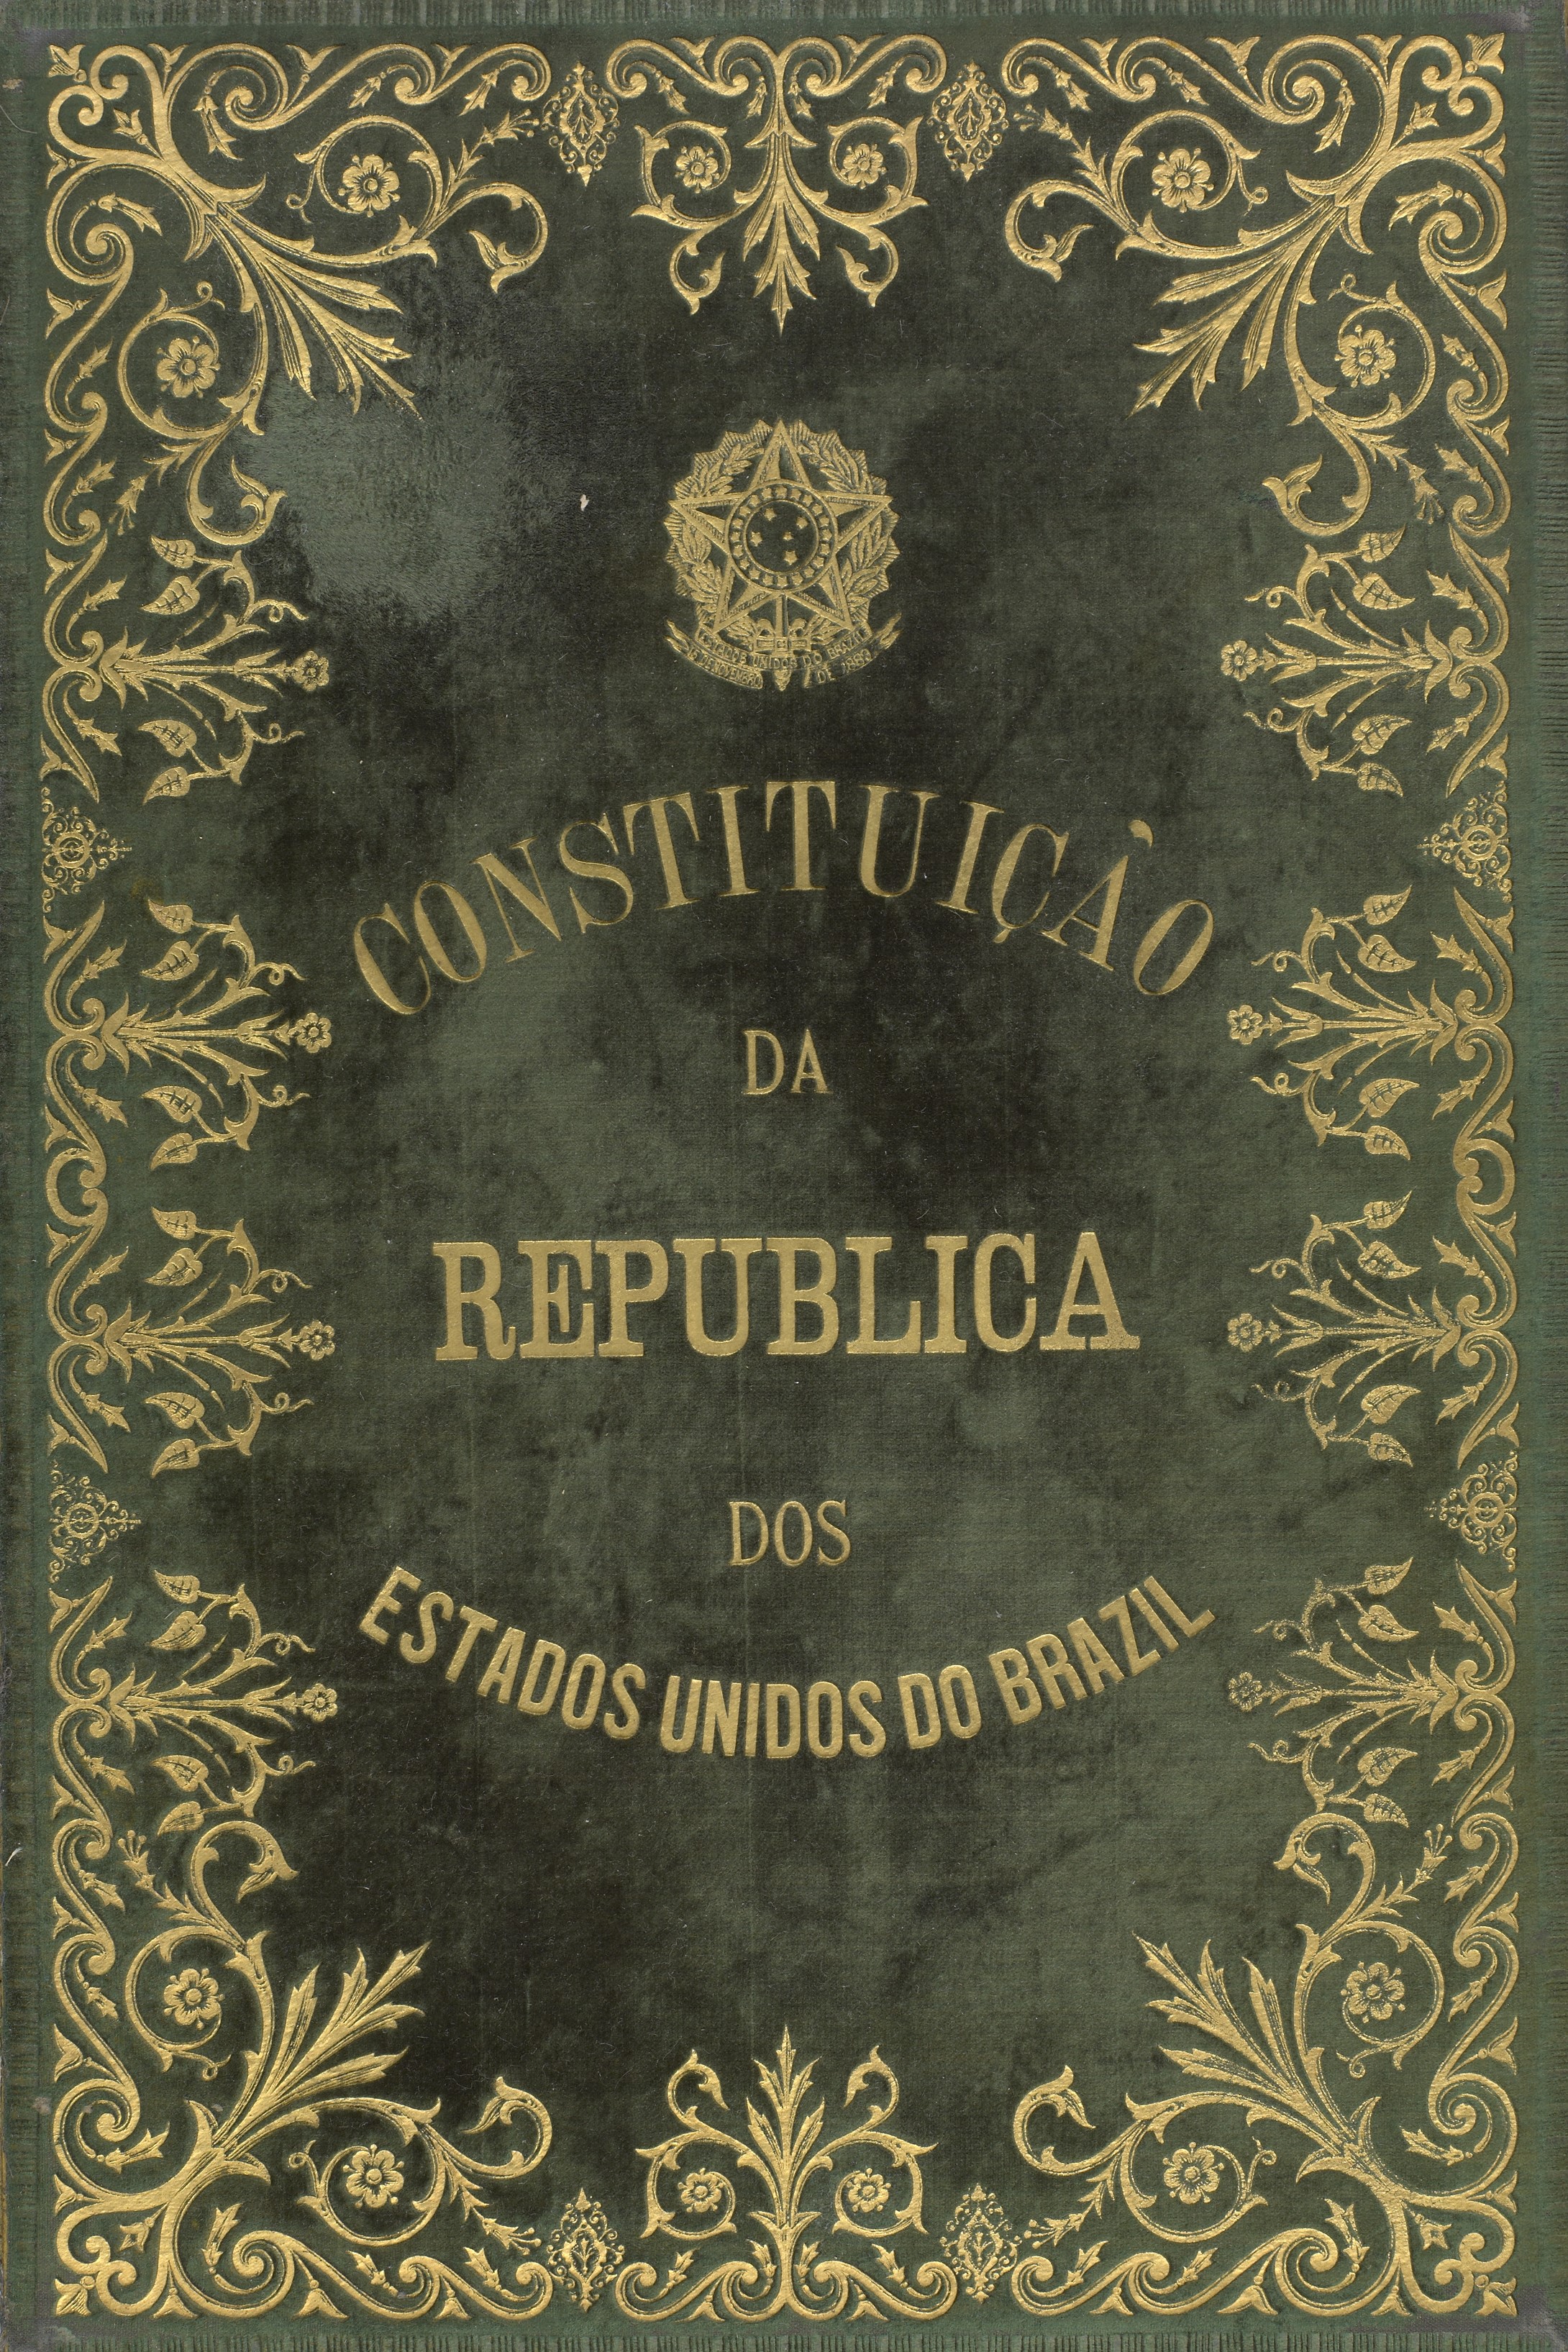 Capa da Constituição de 1891. BR RJANRIO DK C91